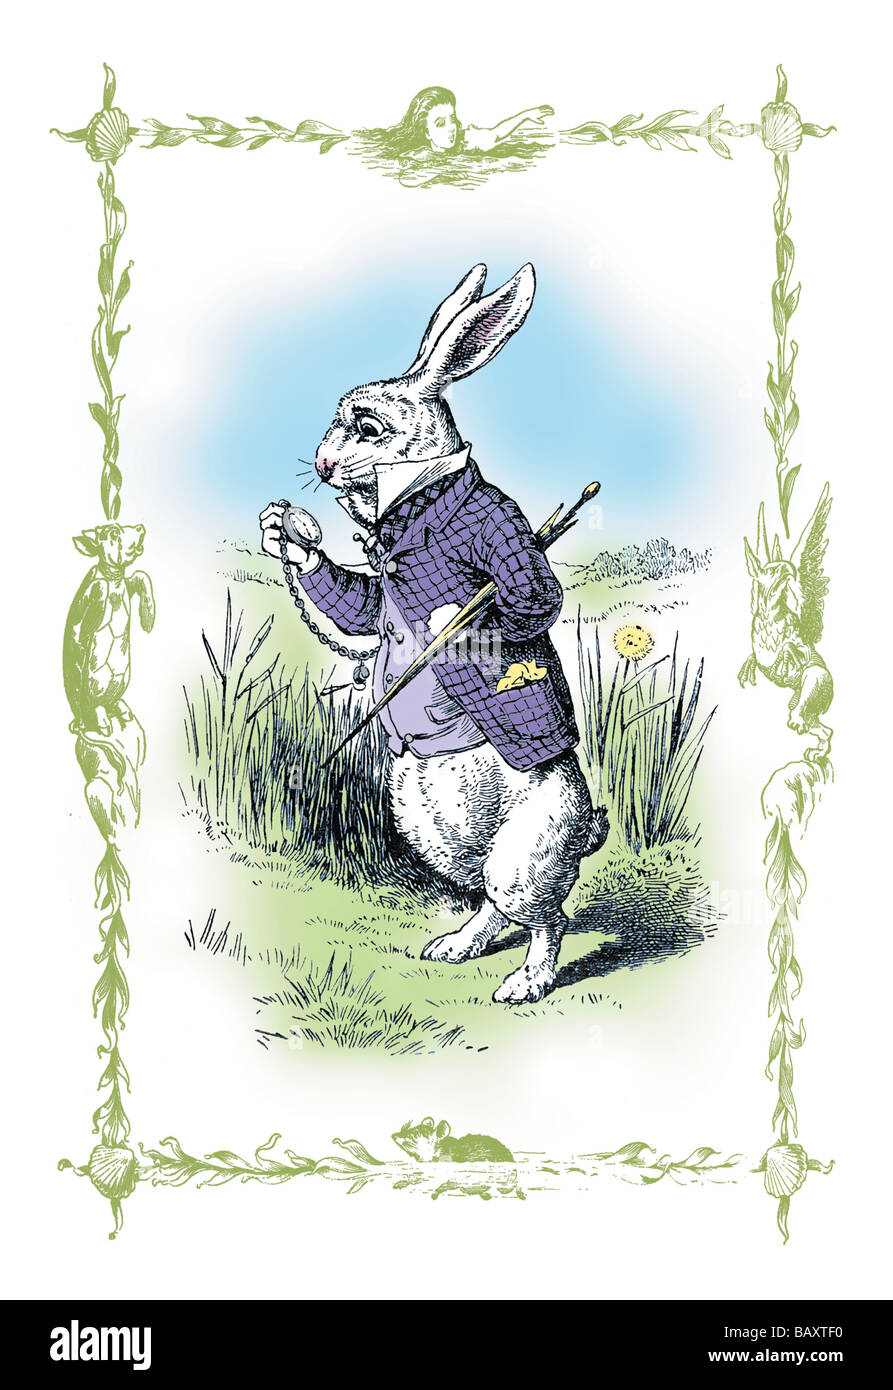 Alice Im Wunderland Das Weisse Kaninchen Stockfotografie Alamy